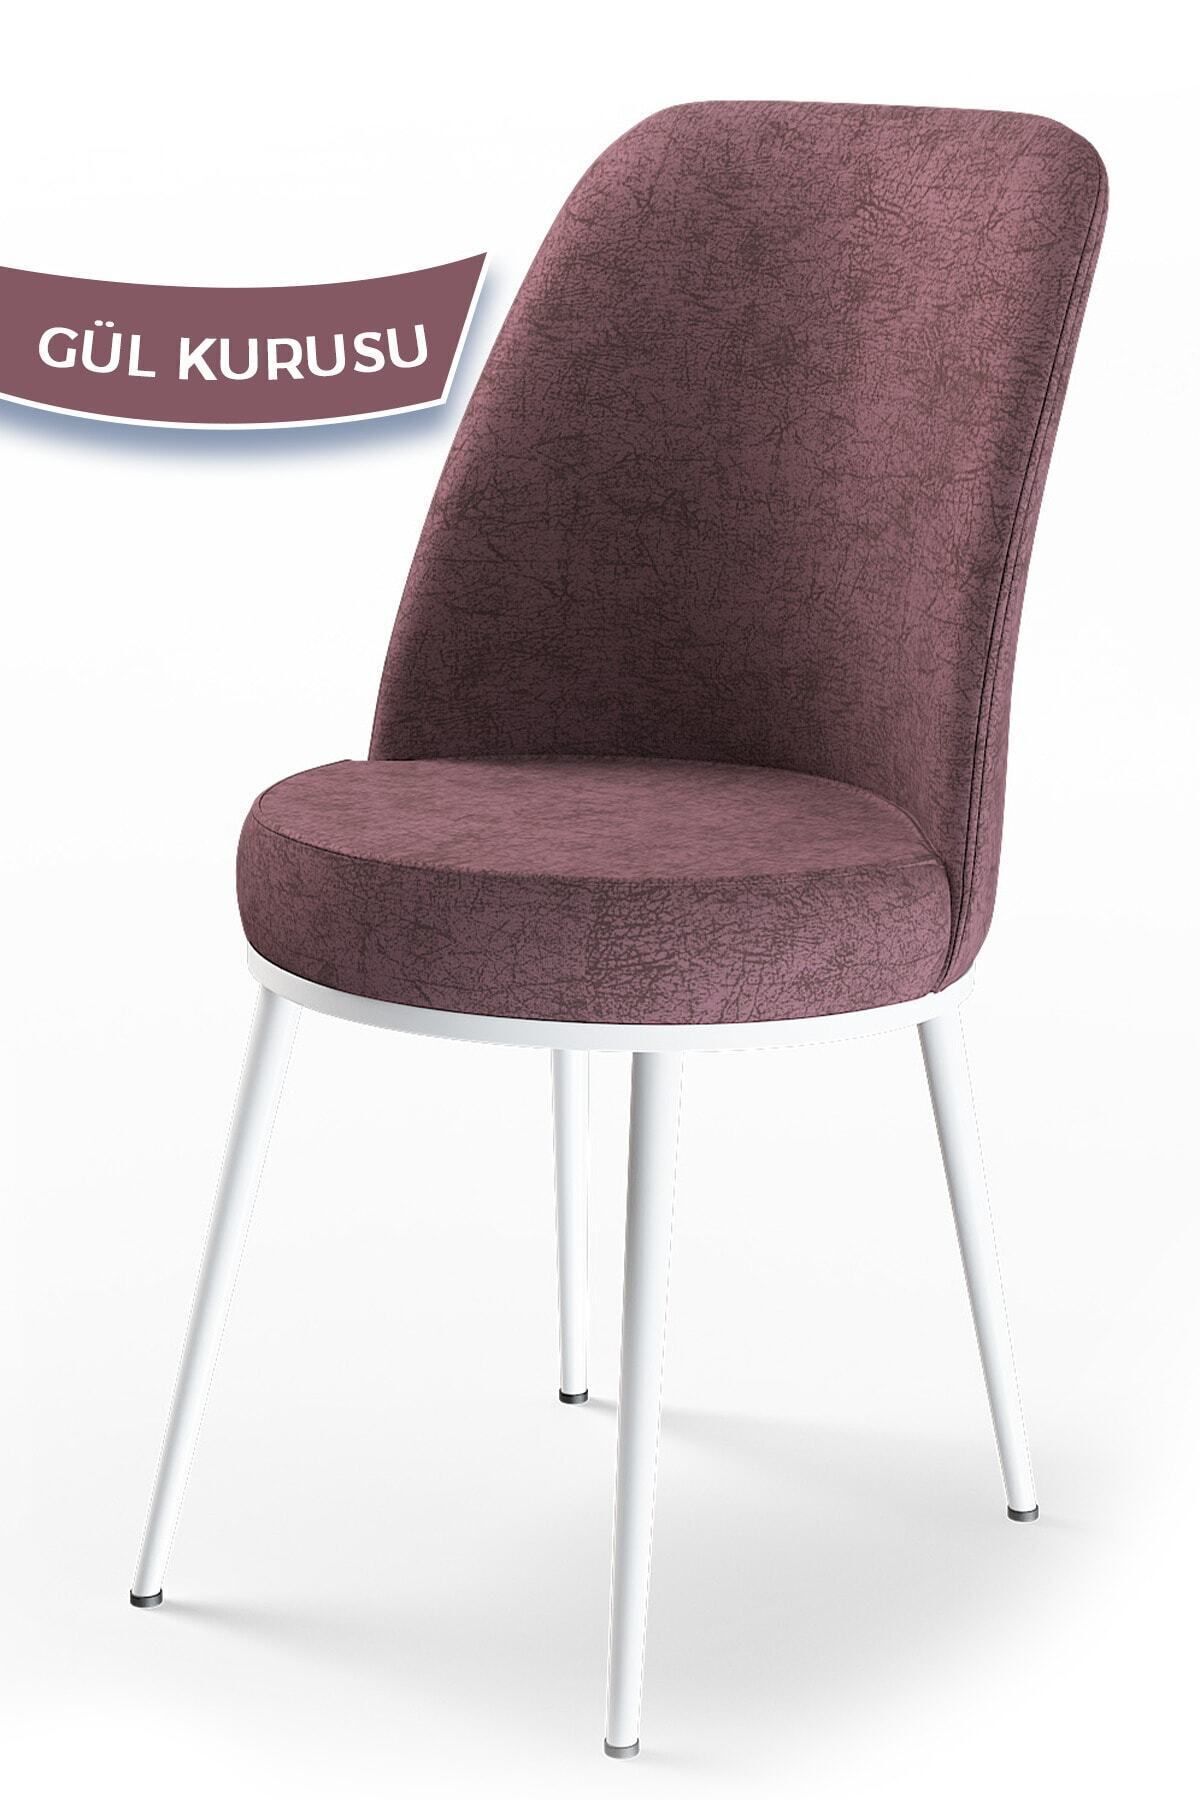 Canisa Concept Dexa Serisi Gül Kurusu Renk Sandalye Mutfak Sandalyesi, Yemek Sandalyesi Ayaklar Beyaz